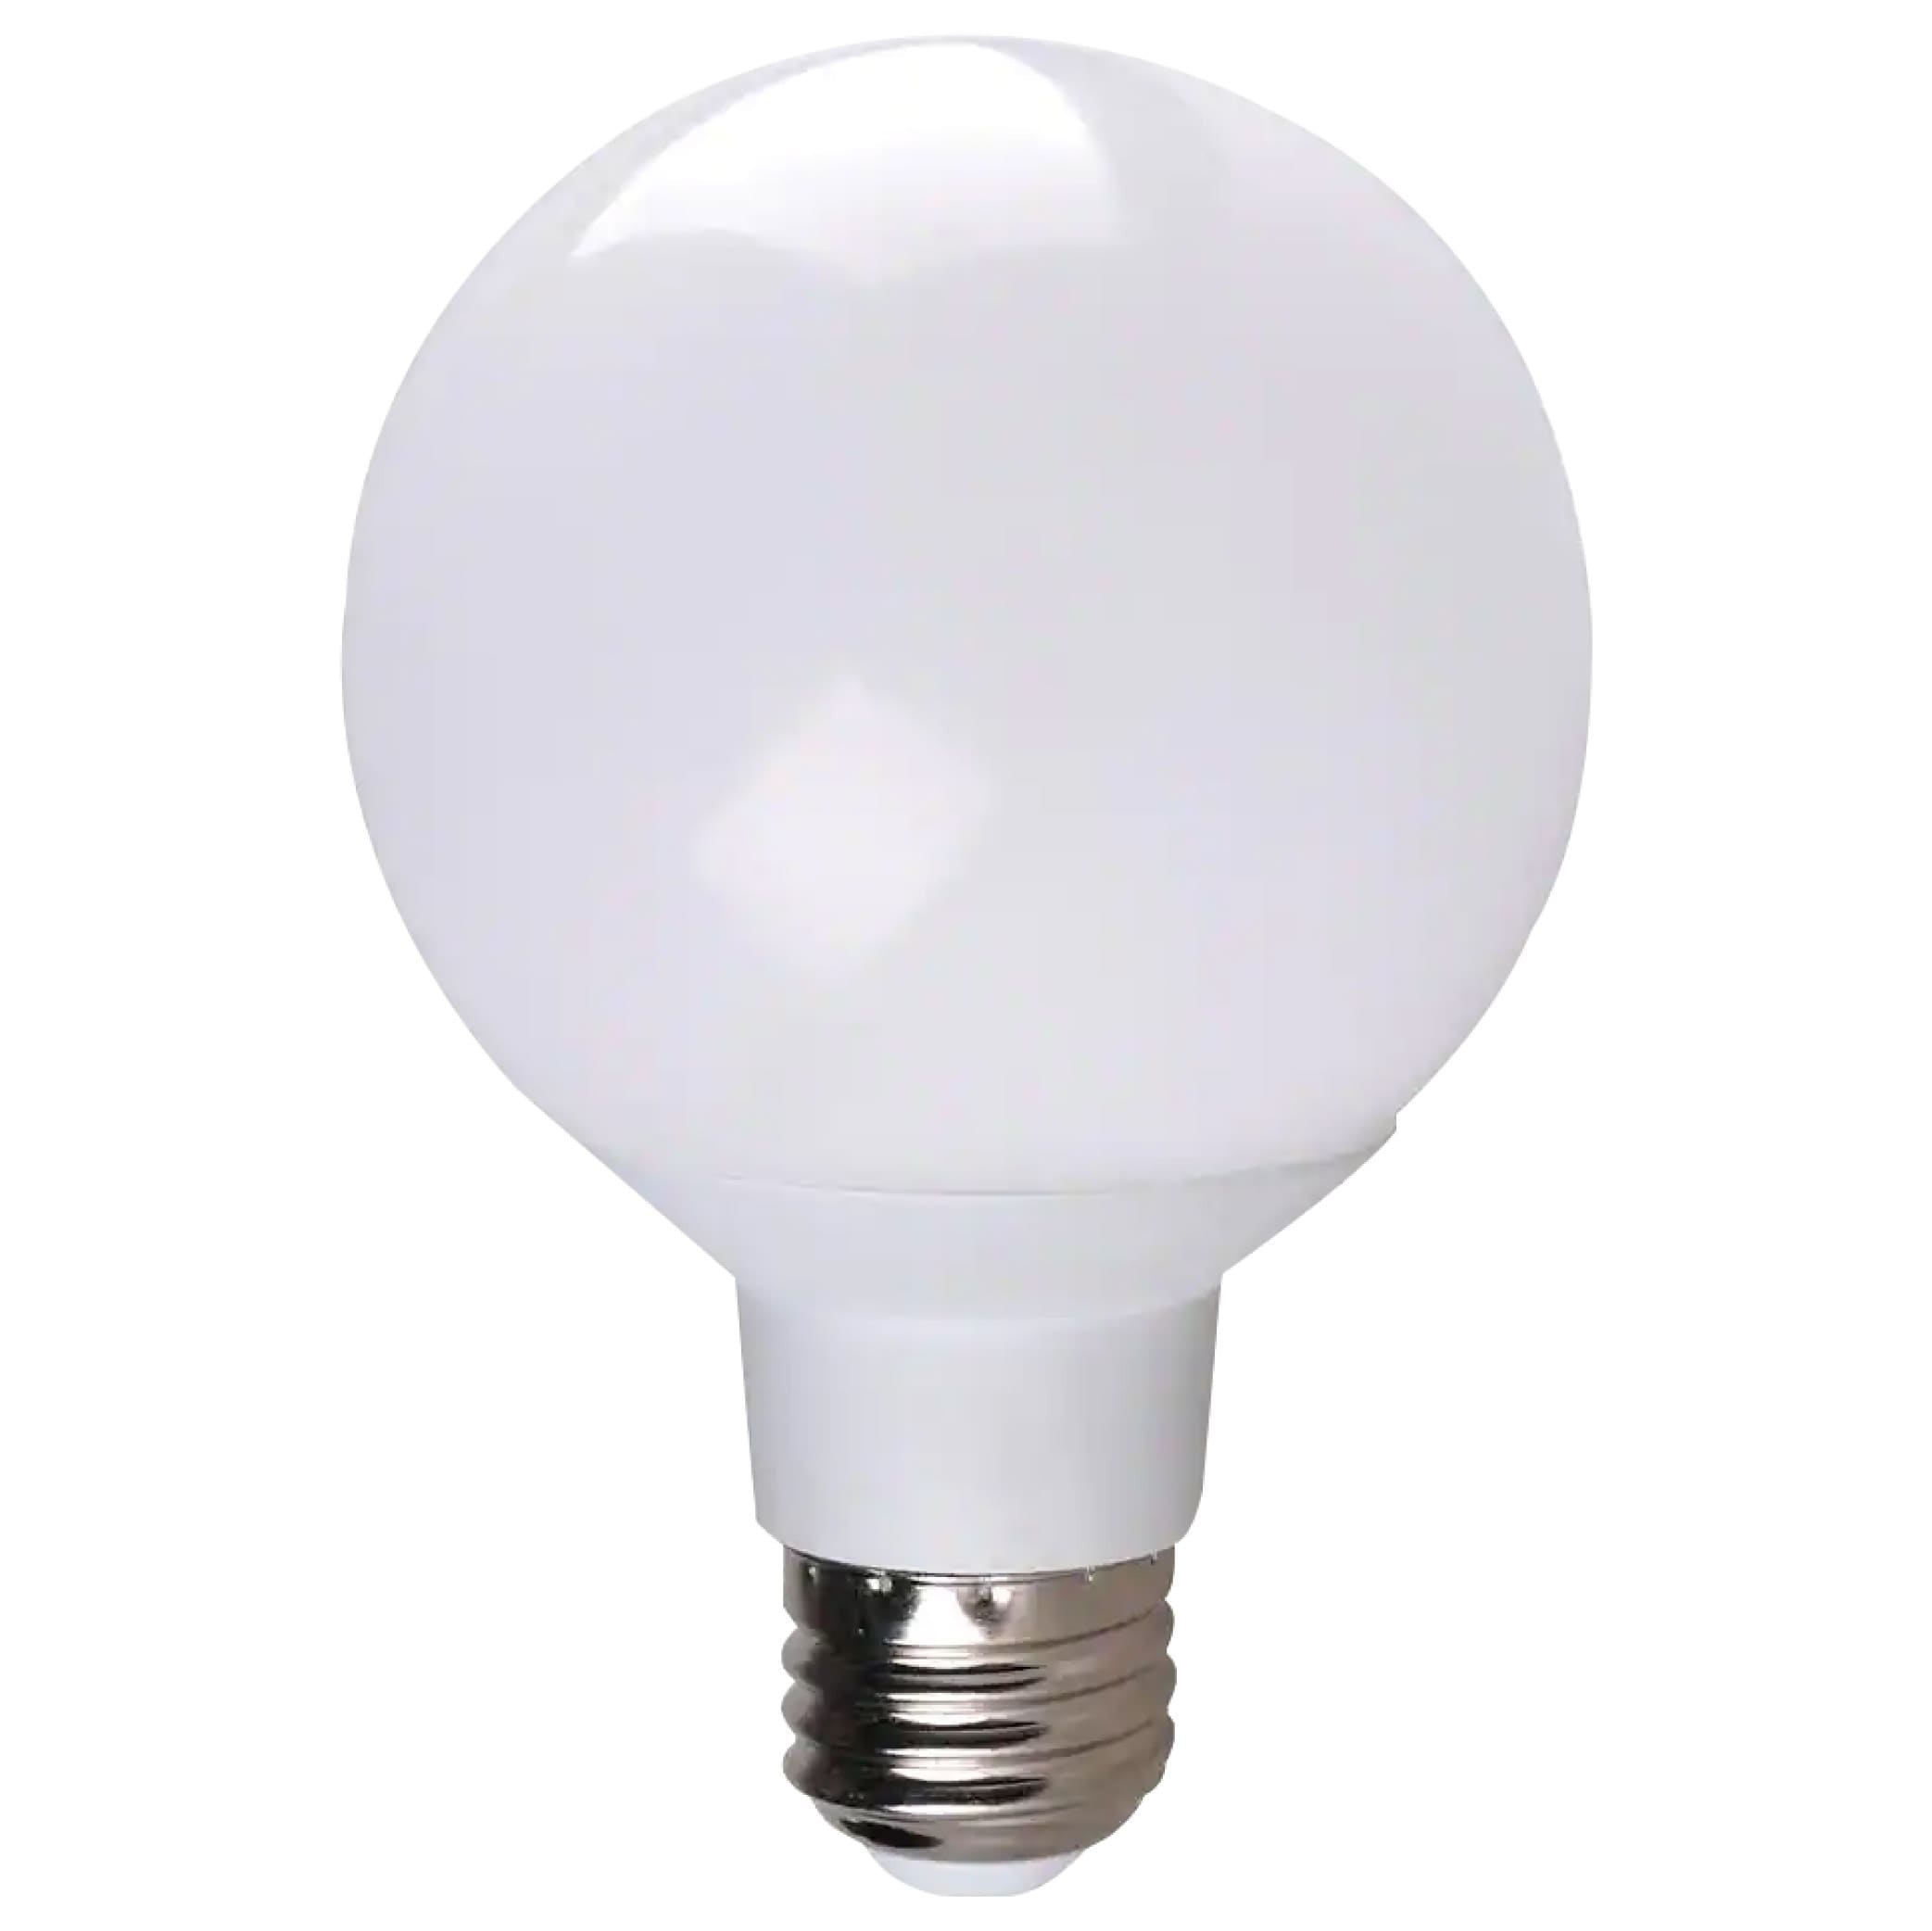 Integral lampe LED E27 Classic Globe, capteur jour/nuit, non dimmable,  5.000 K, 4,8 W, 470 lumens